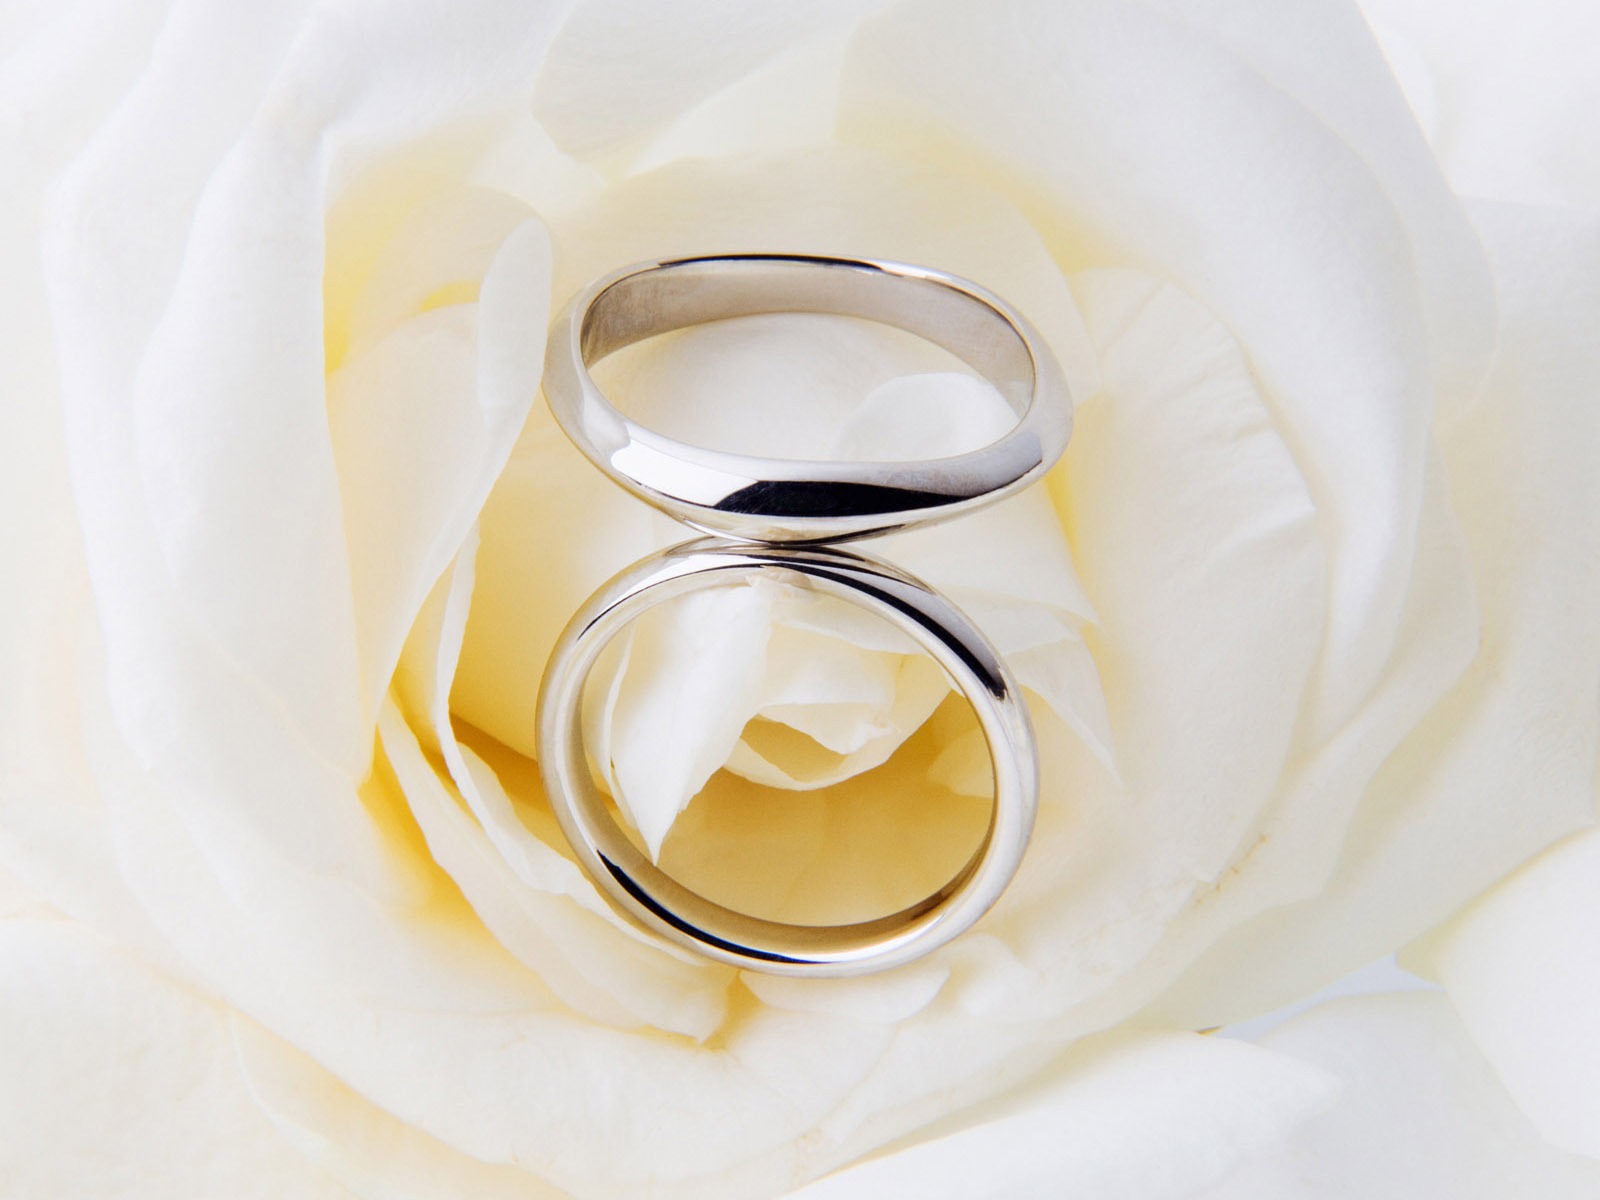 Mariage et papier peint anneau de mariage (2) #18 - 1600x1200